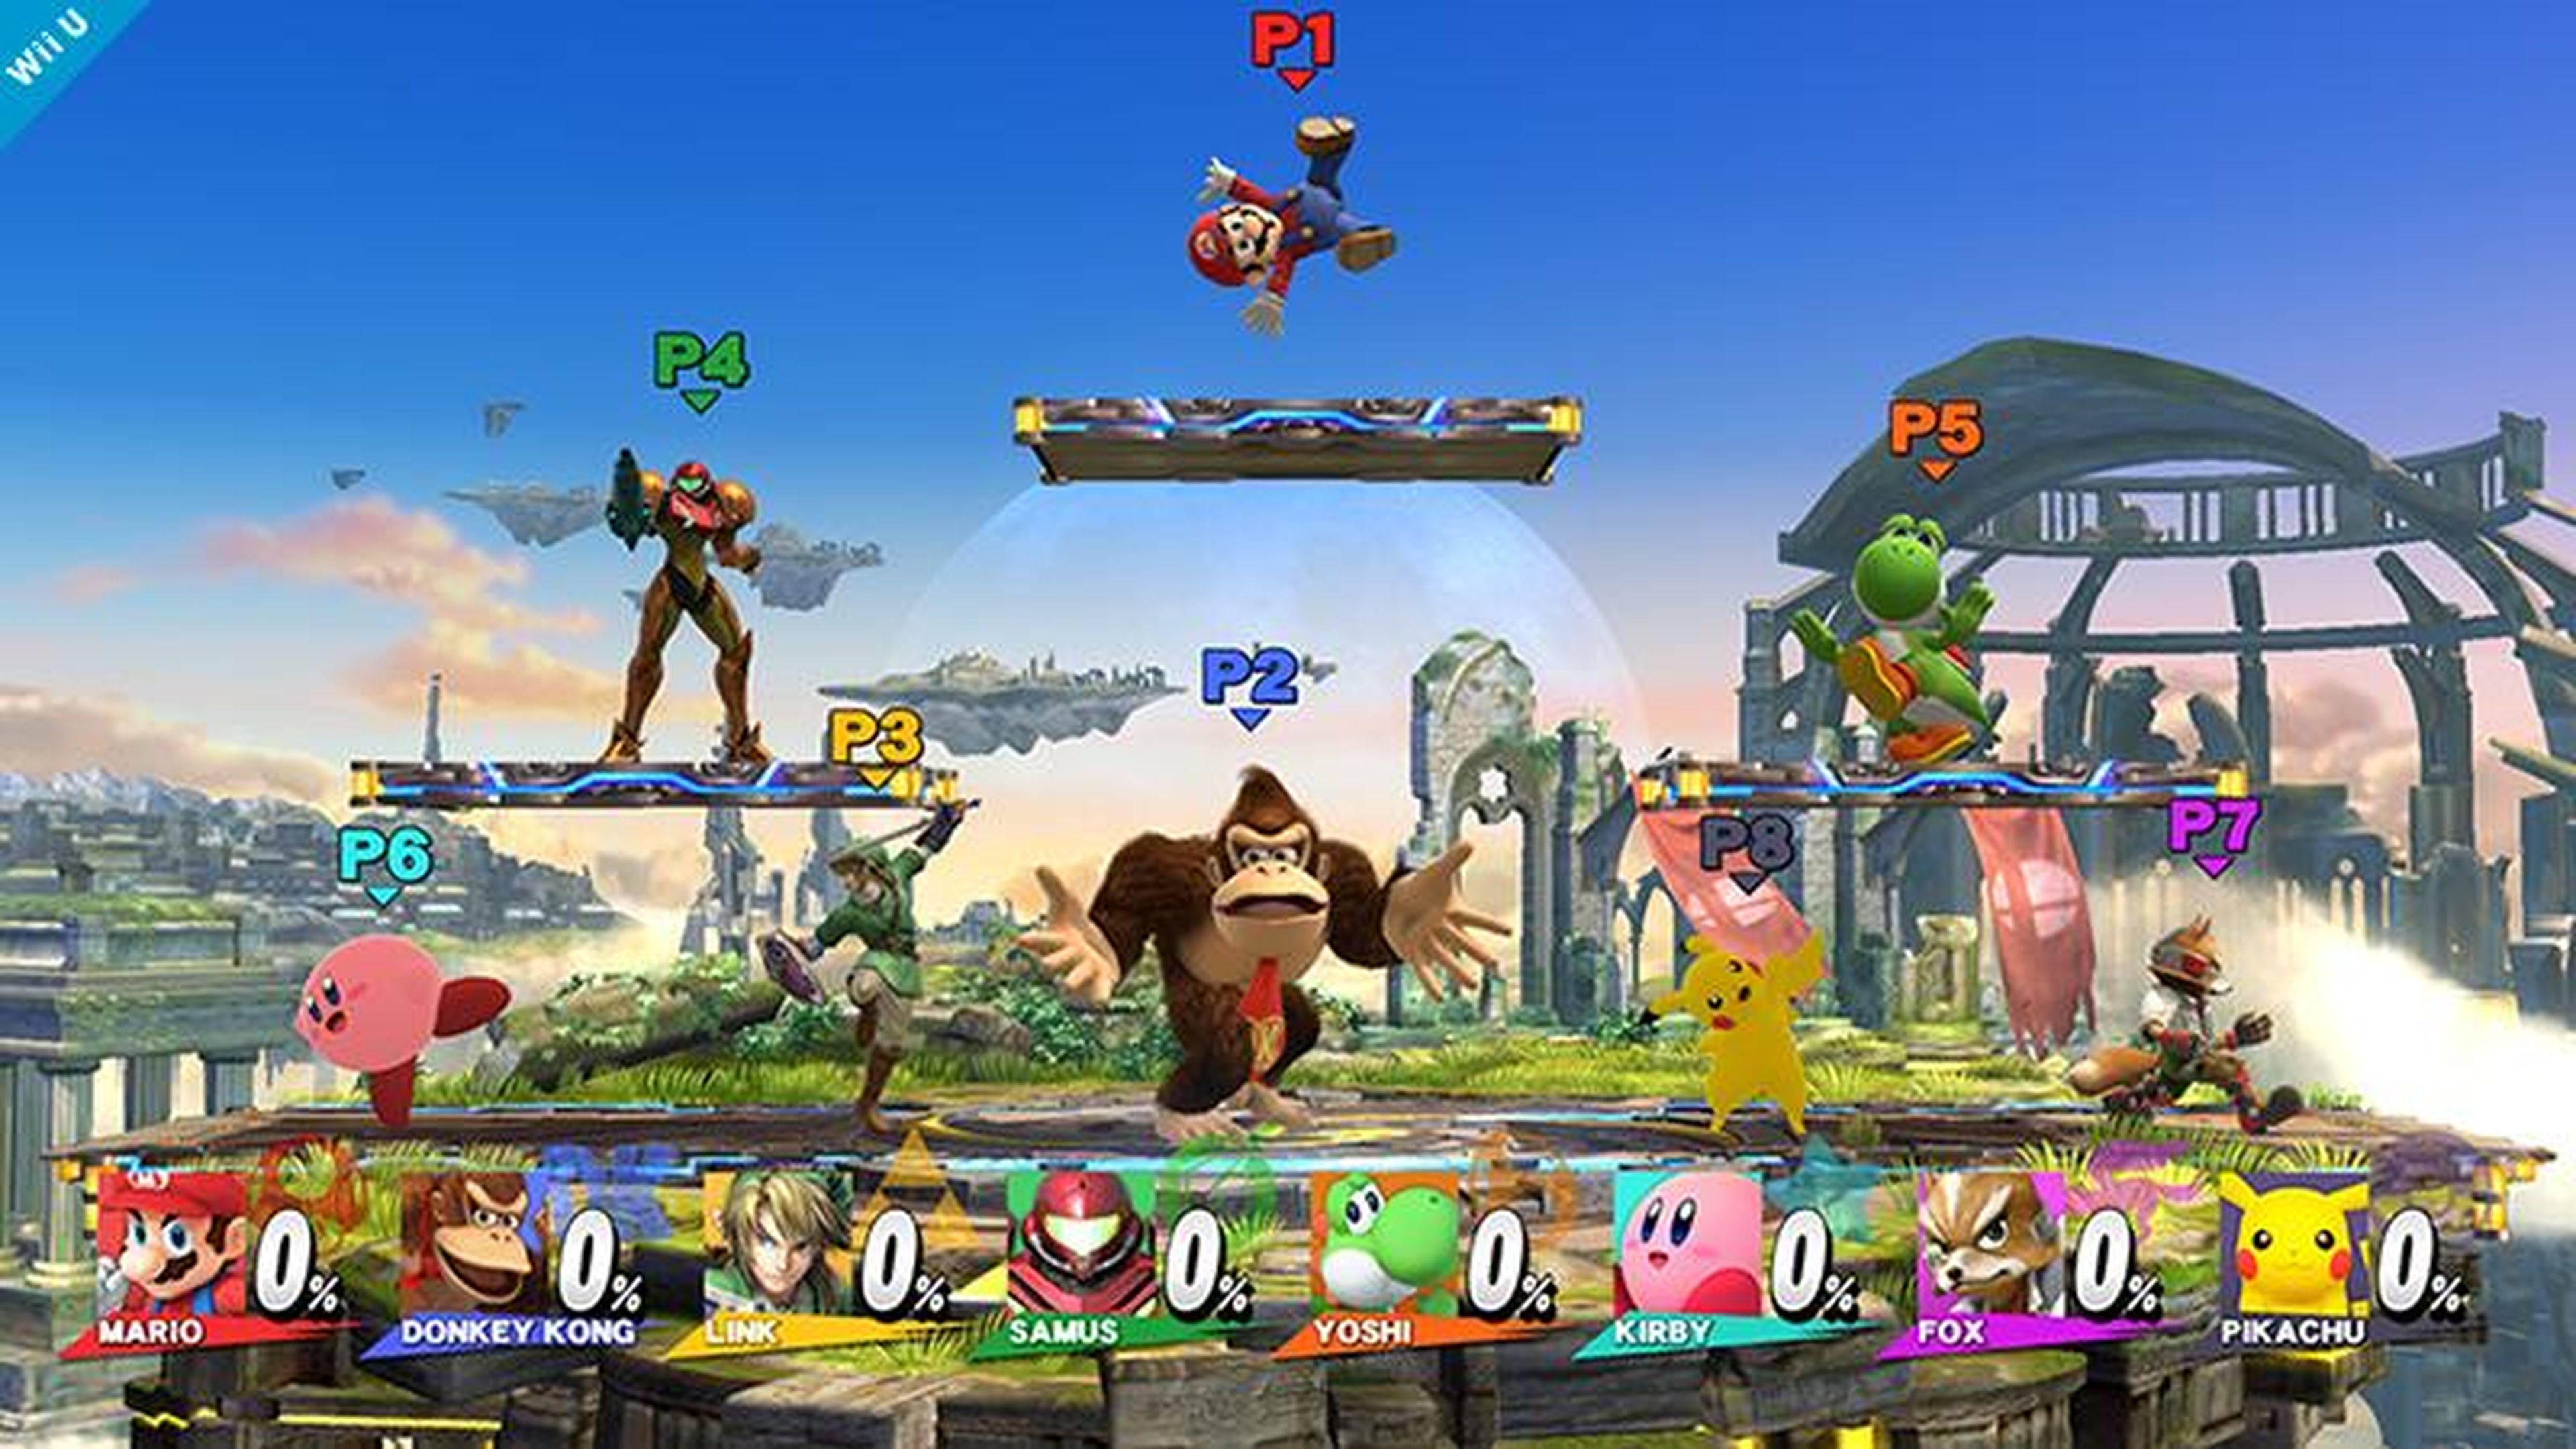 Avance de Super Smash Bros. para Wii U